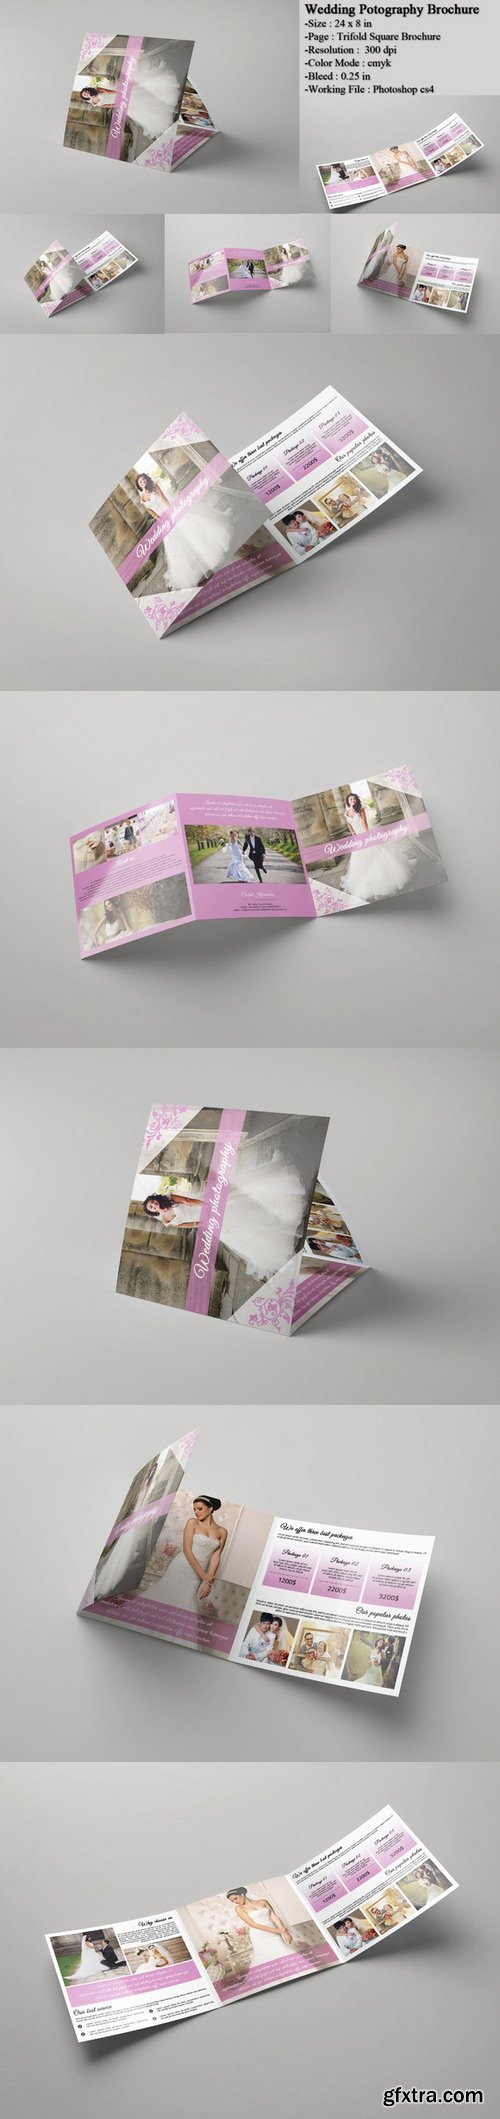 CM - Wedding Photography Brochure 348810